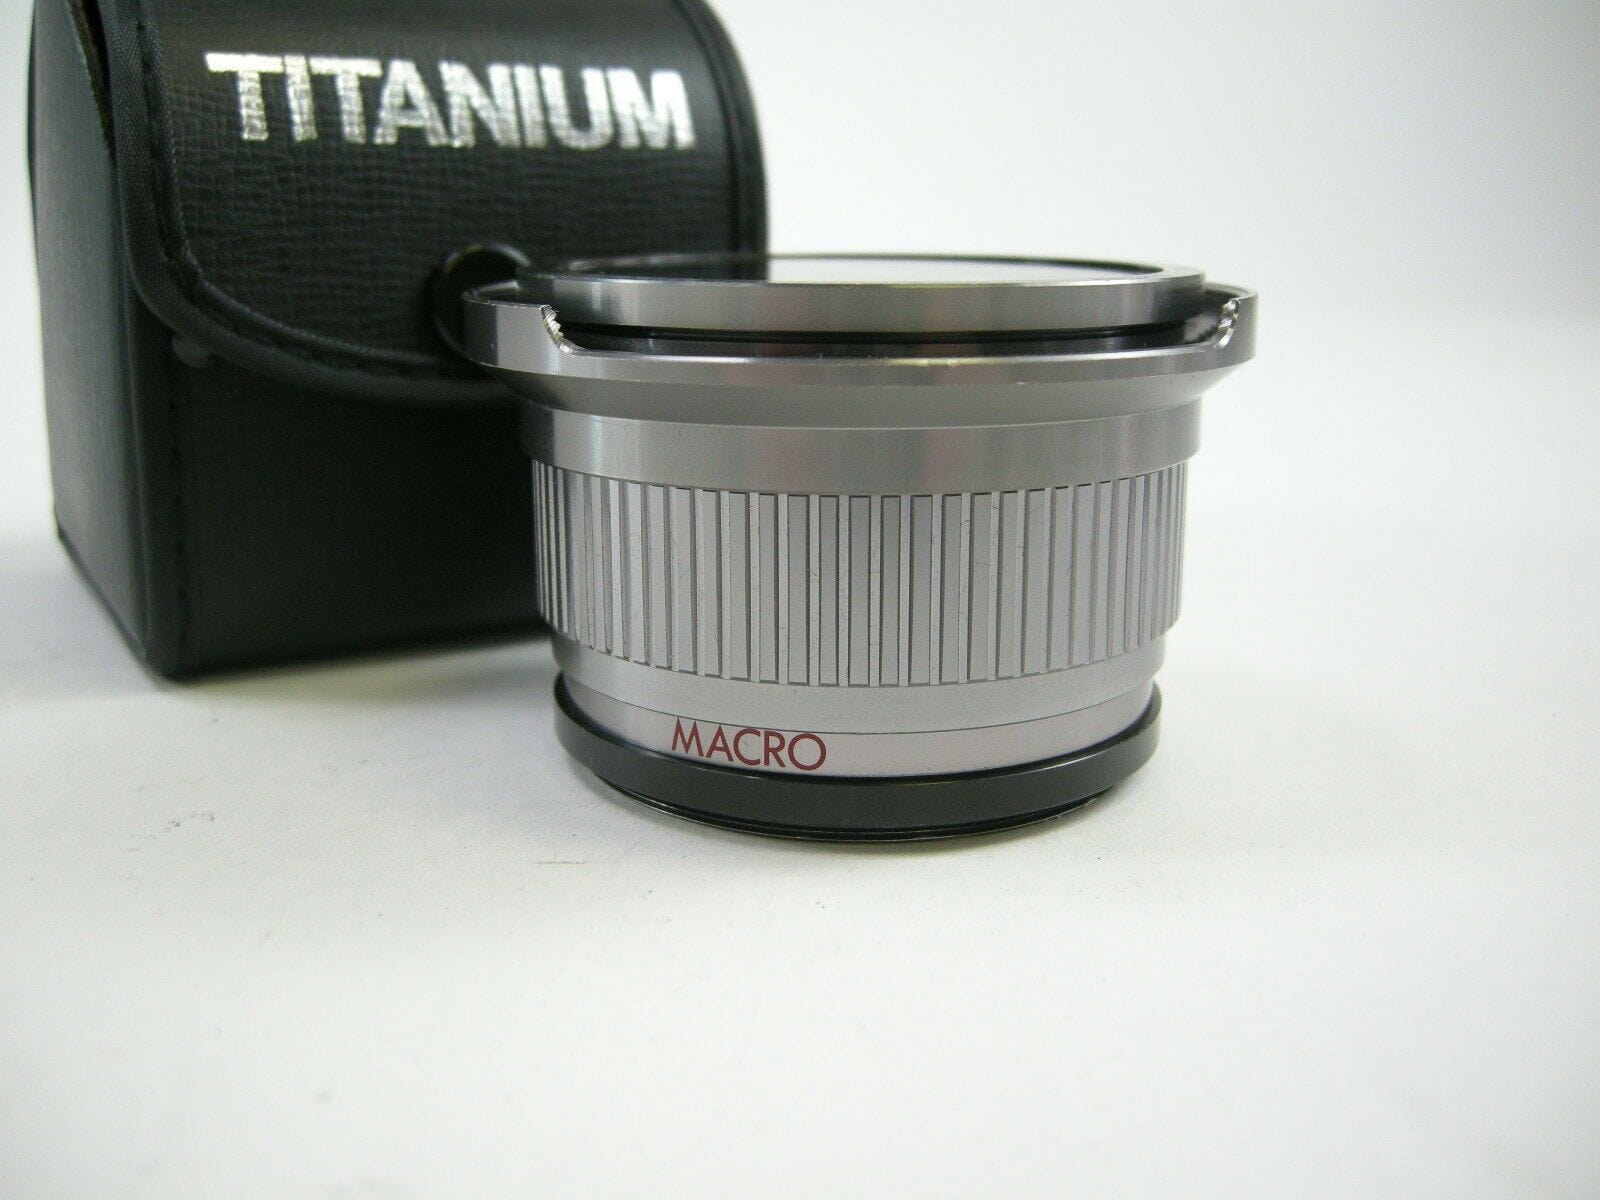 Titanium Super Wide Macro Lens S7/52mm Screw Mt.